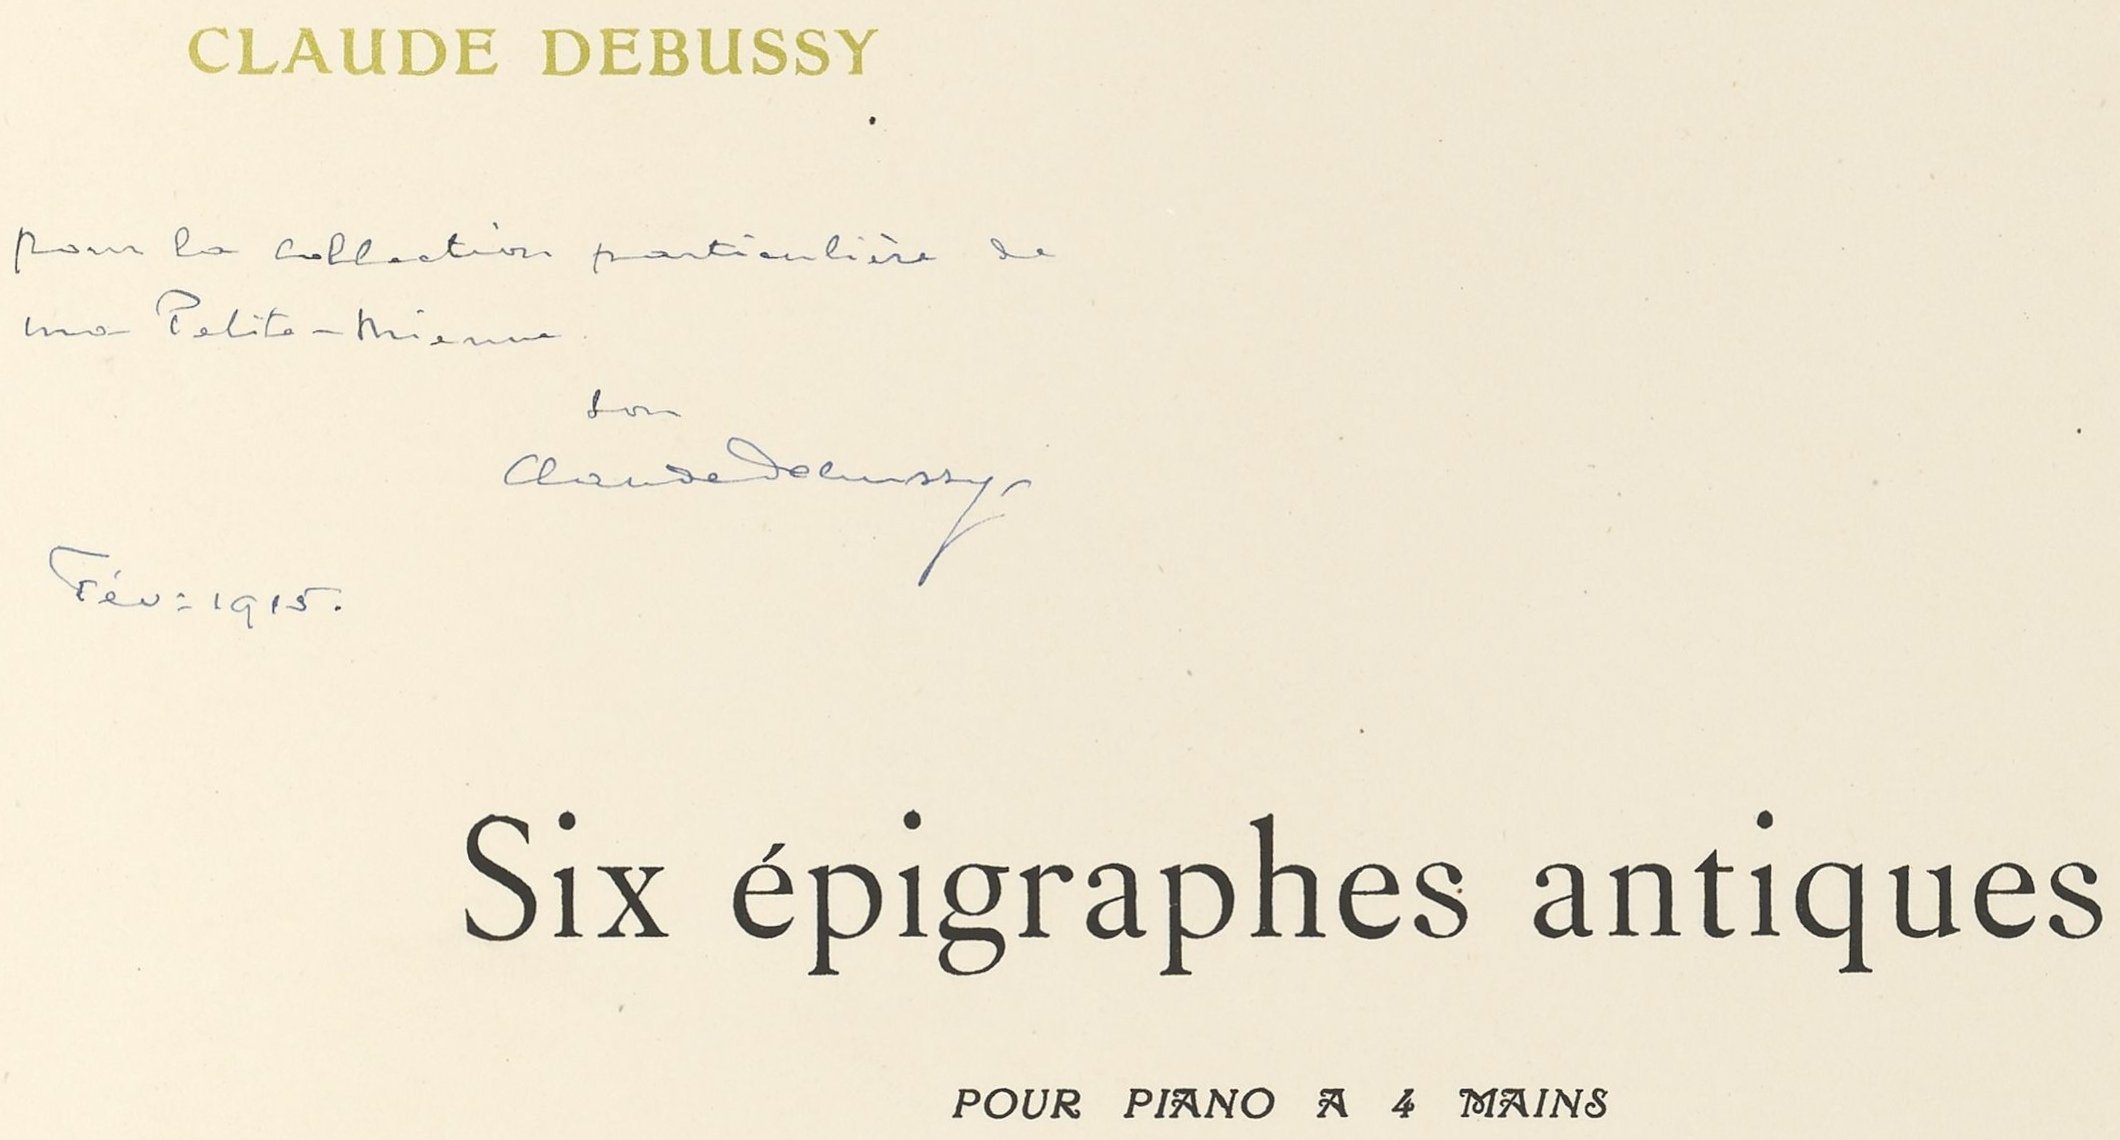 Claude Debussy , Six épigraphes antiques pour piano à 4 mains, Durand & Cie (Paris), 1915, extrait couverture partition avec une dédicade de Claude Debussy, cliquer pour une vue agrandie